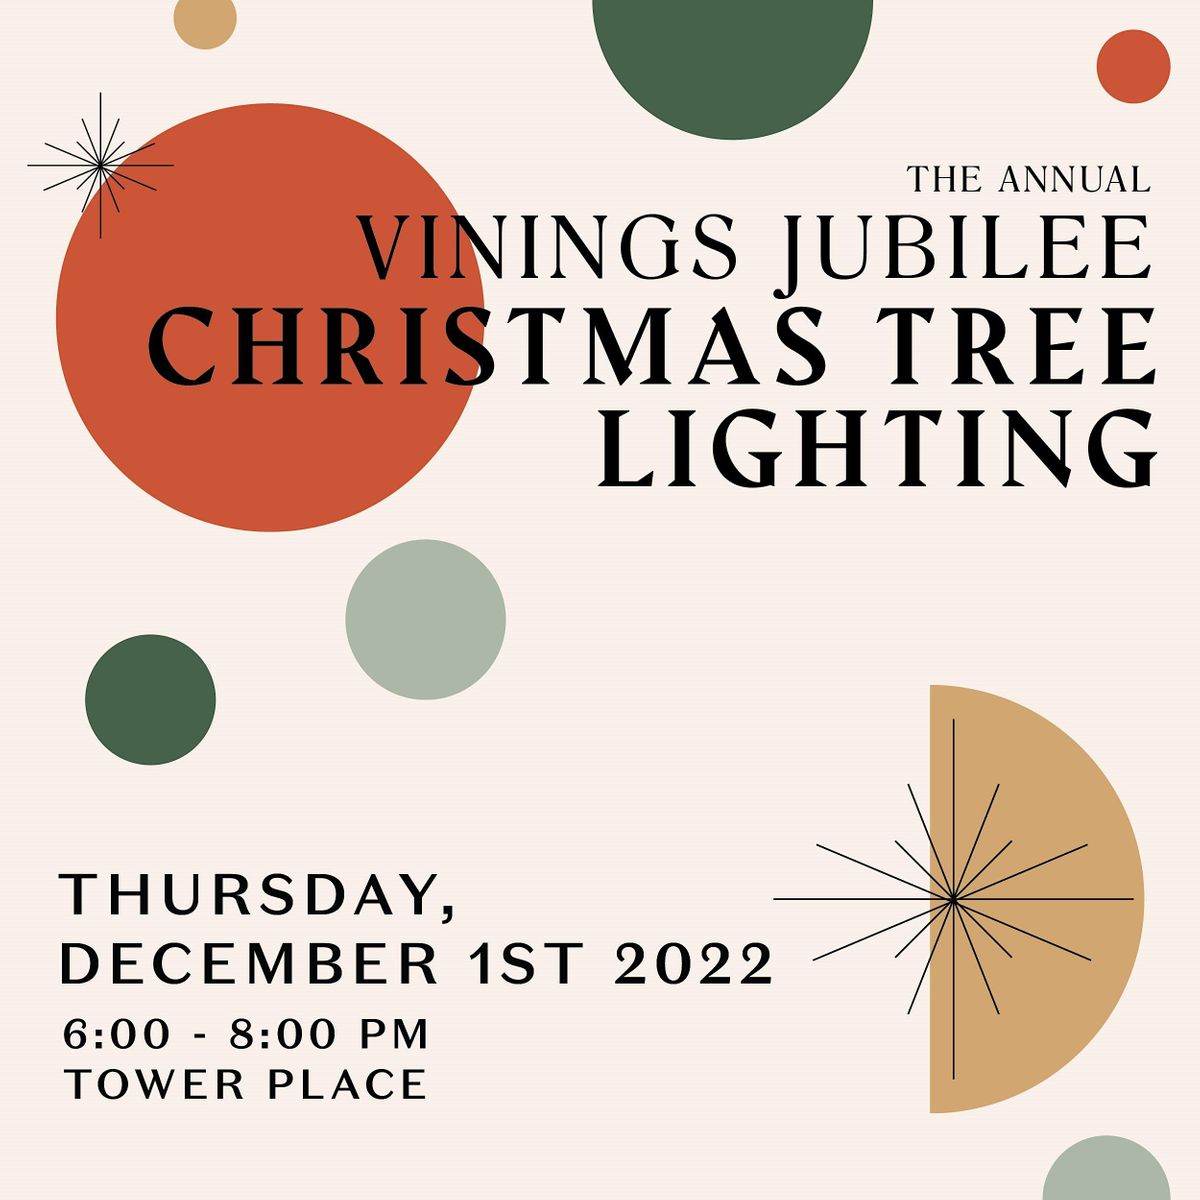 Annual Vinings Jubilee Christmas Tree Lighting